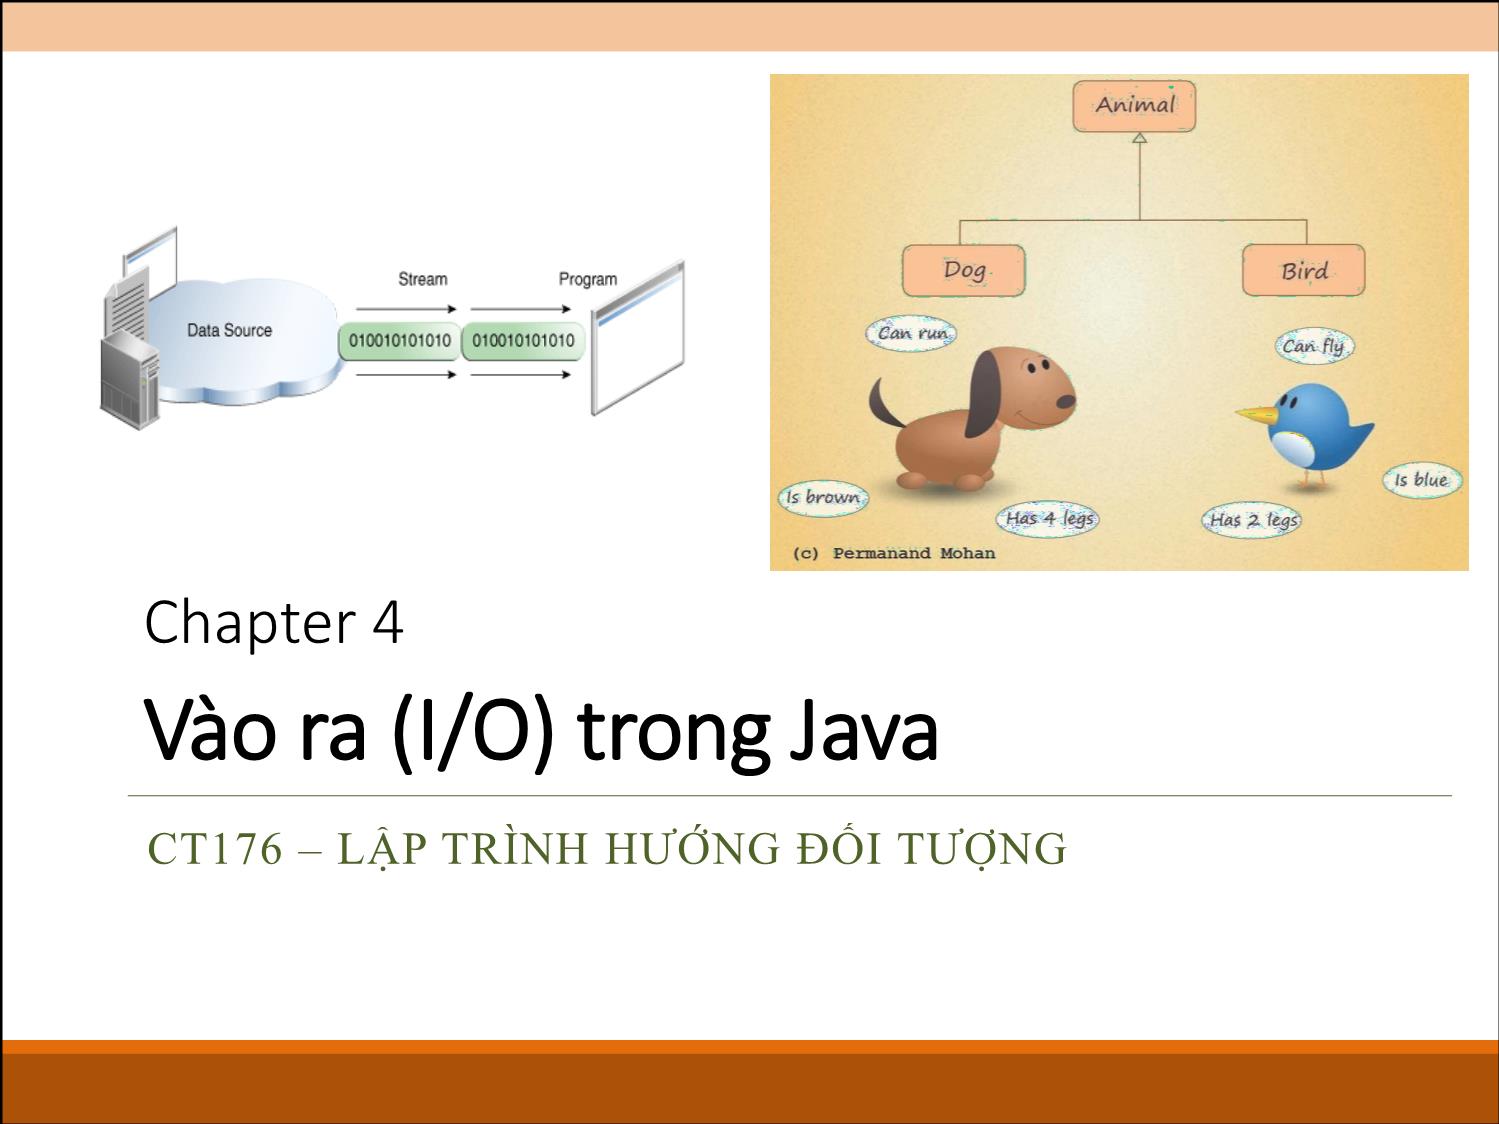 Bài giảng môn Lập trình hướng đối tượng - Chương 4: Vào ra (I/O) trong Java trang 1